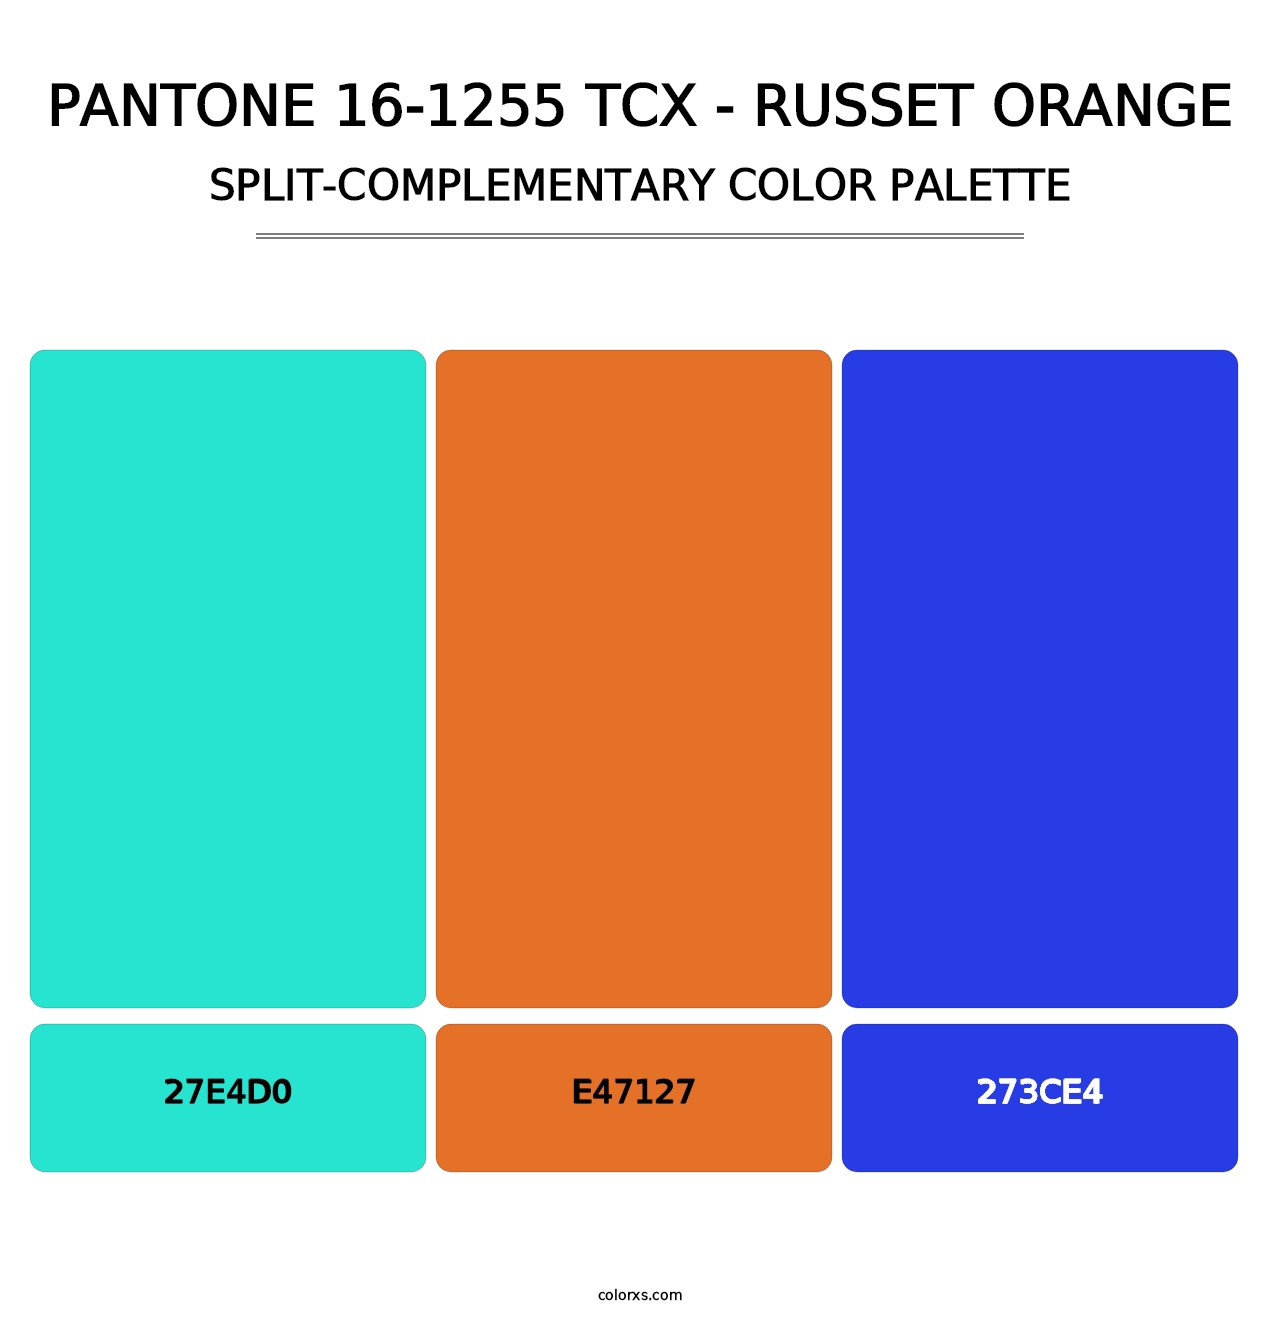 PANTONE 16-1255 TCX - Russet Orange - Split-Complementary Color Palette